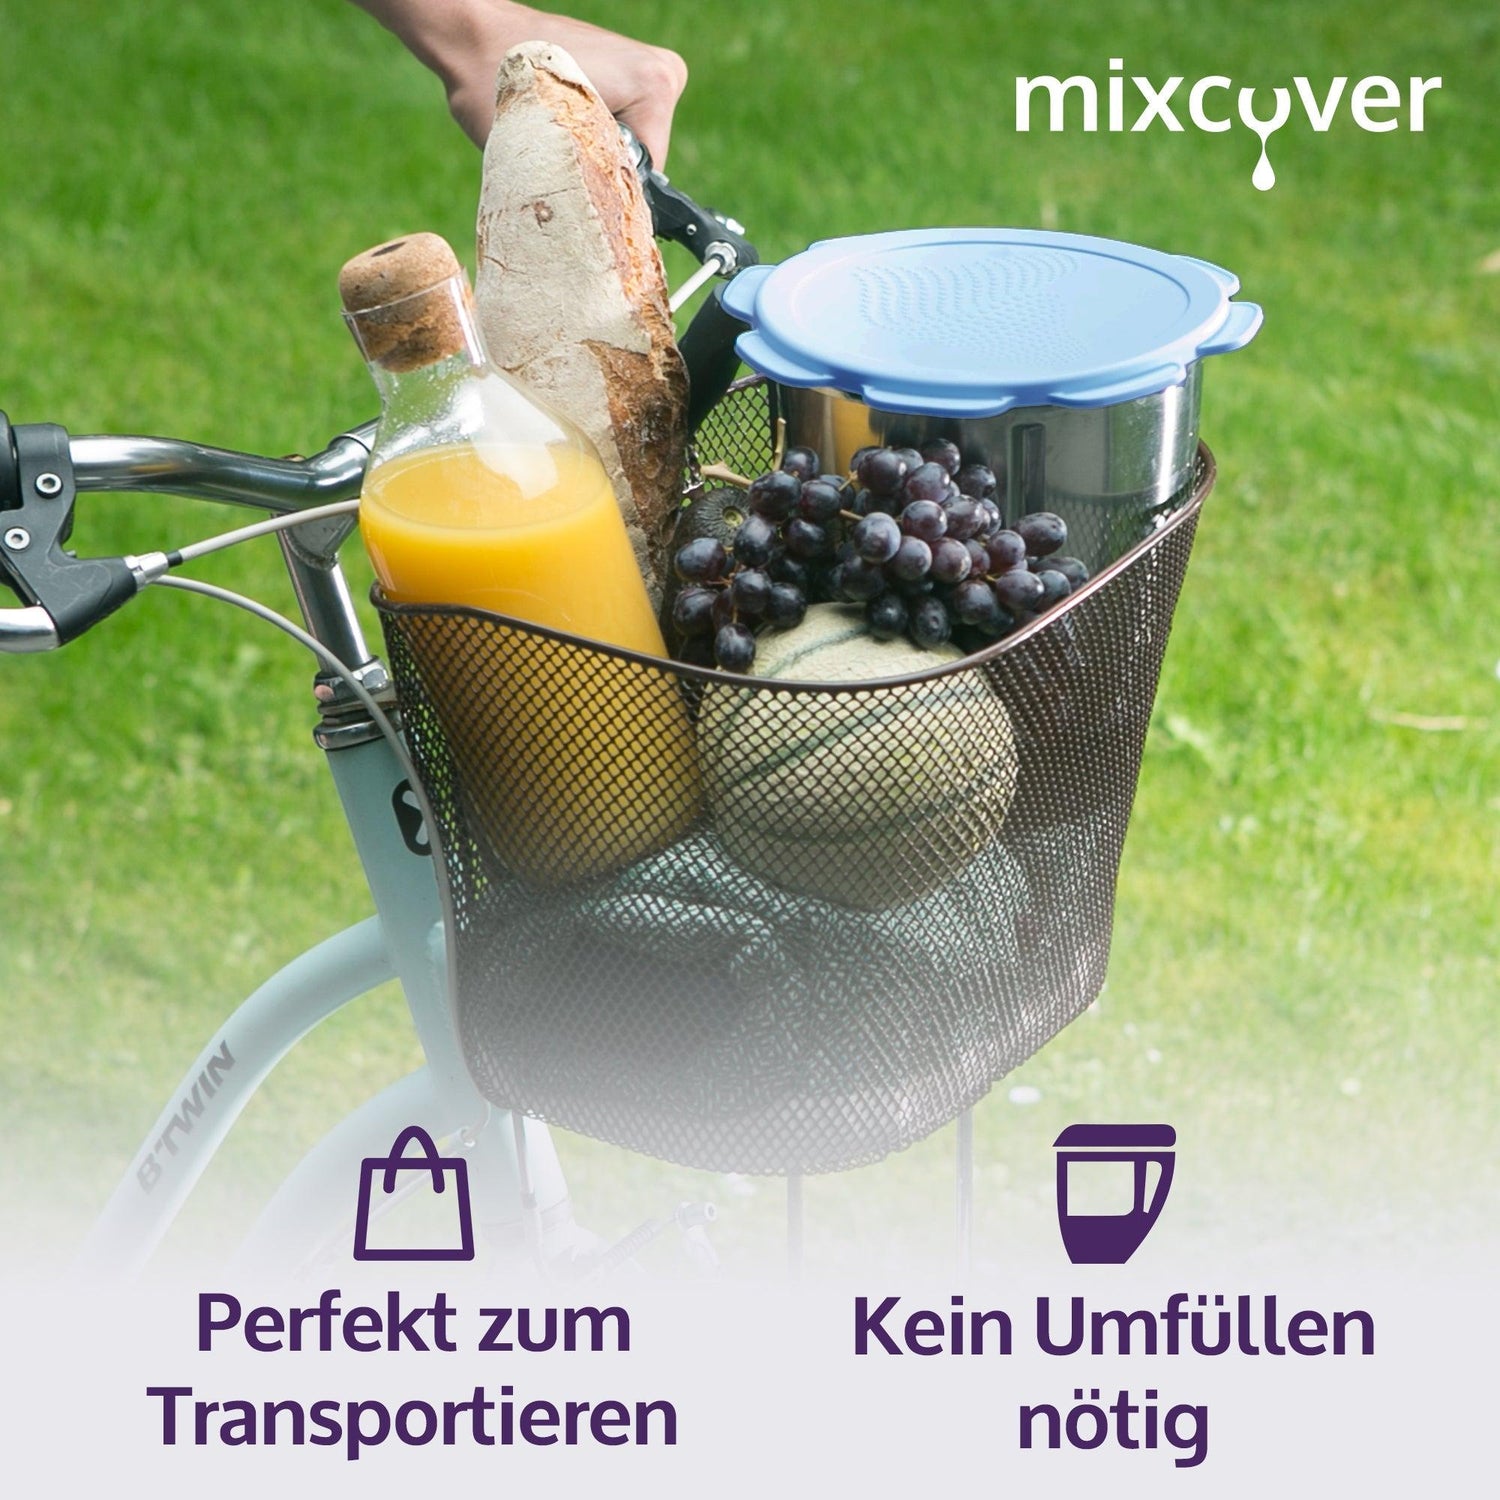 mixcover Silikon Deckel wasser- & geruchsdicht für Thermomix TM5 TM6 Friend Blau - Mixcover - Mixcover